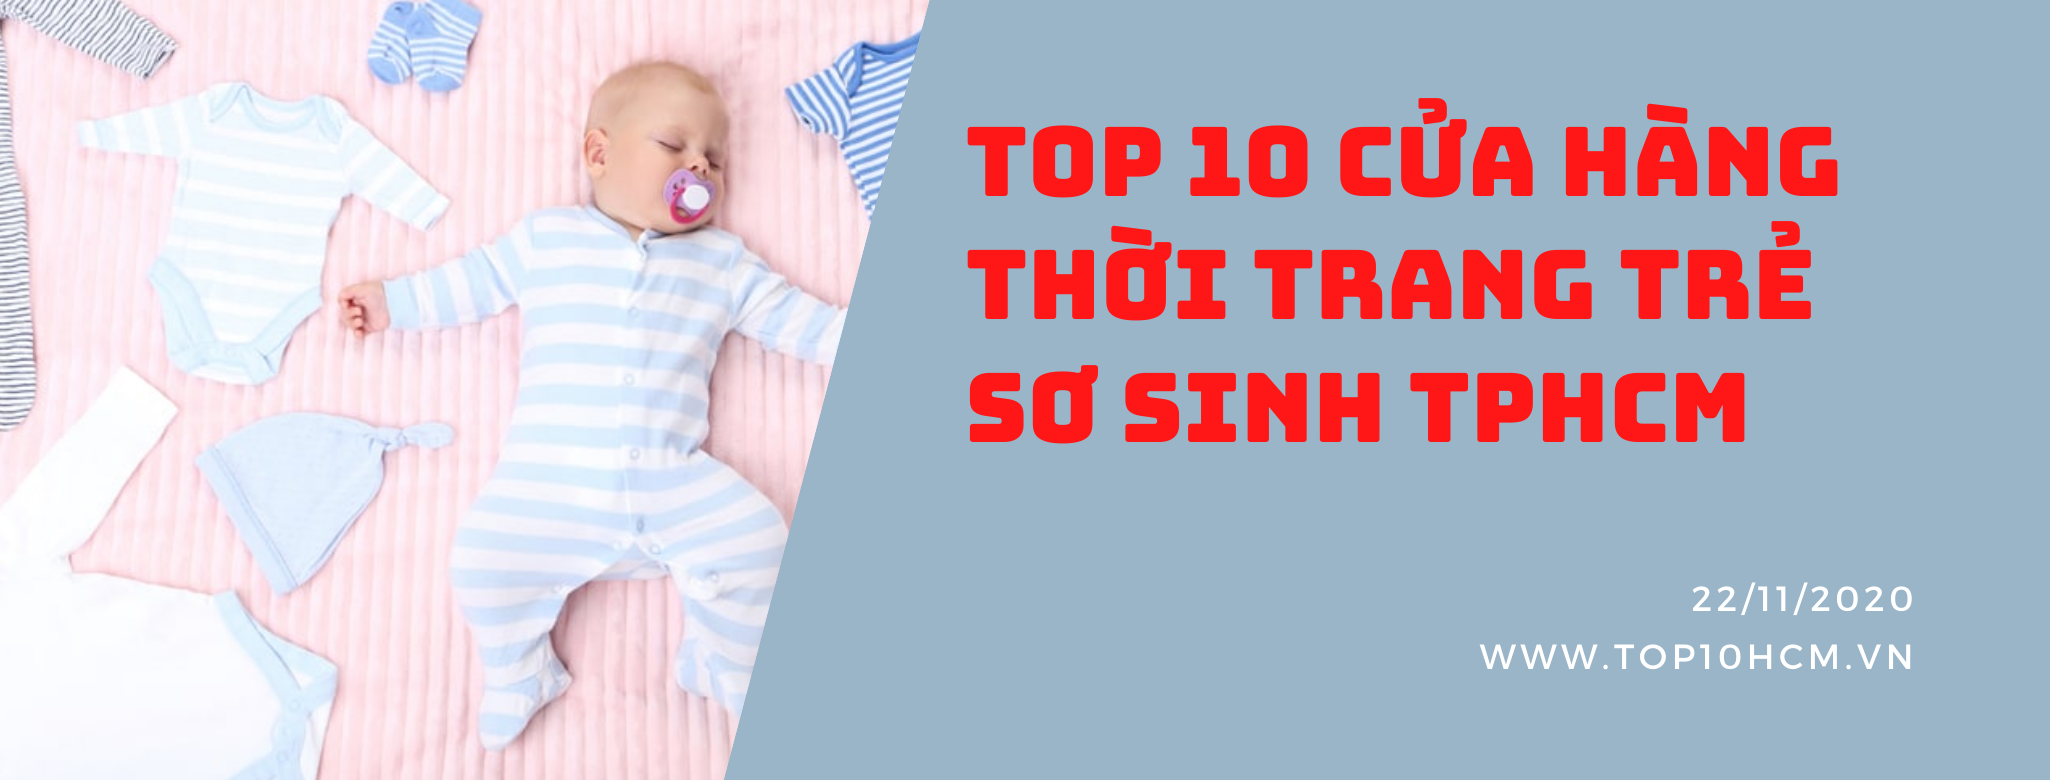 TOP 10 cửa hàng quần áo trẻ sơ sinh ở TPHCM - Top10hcm.vn